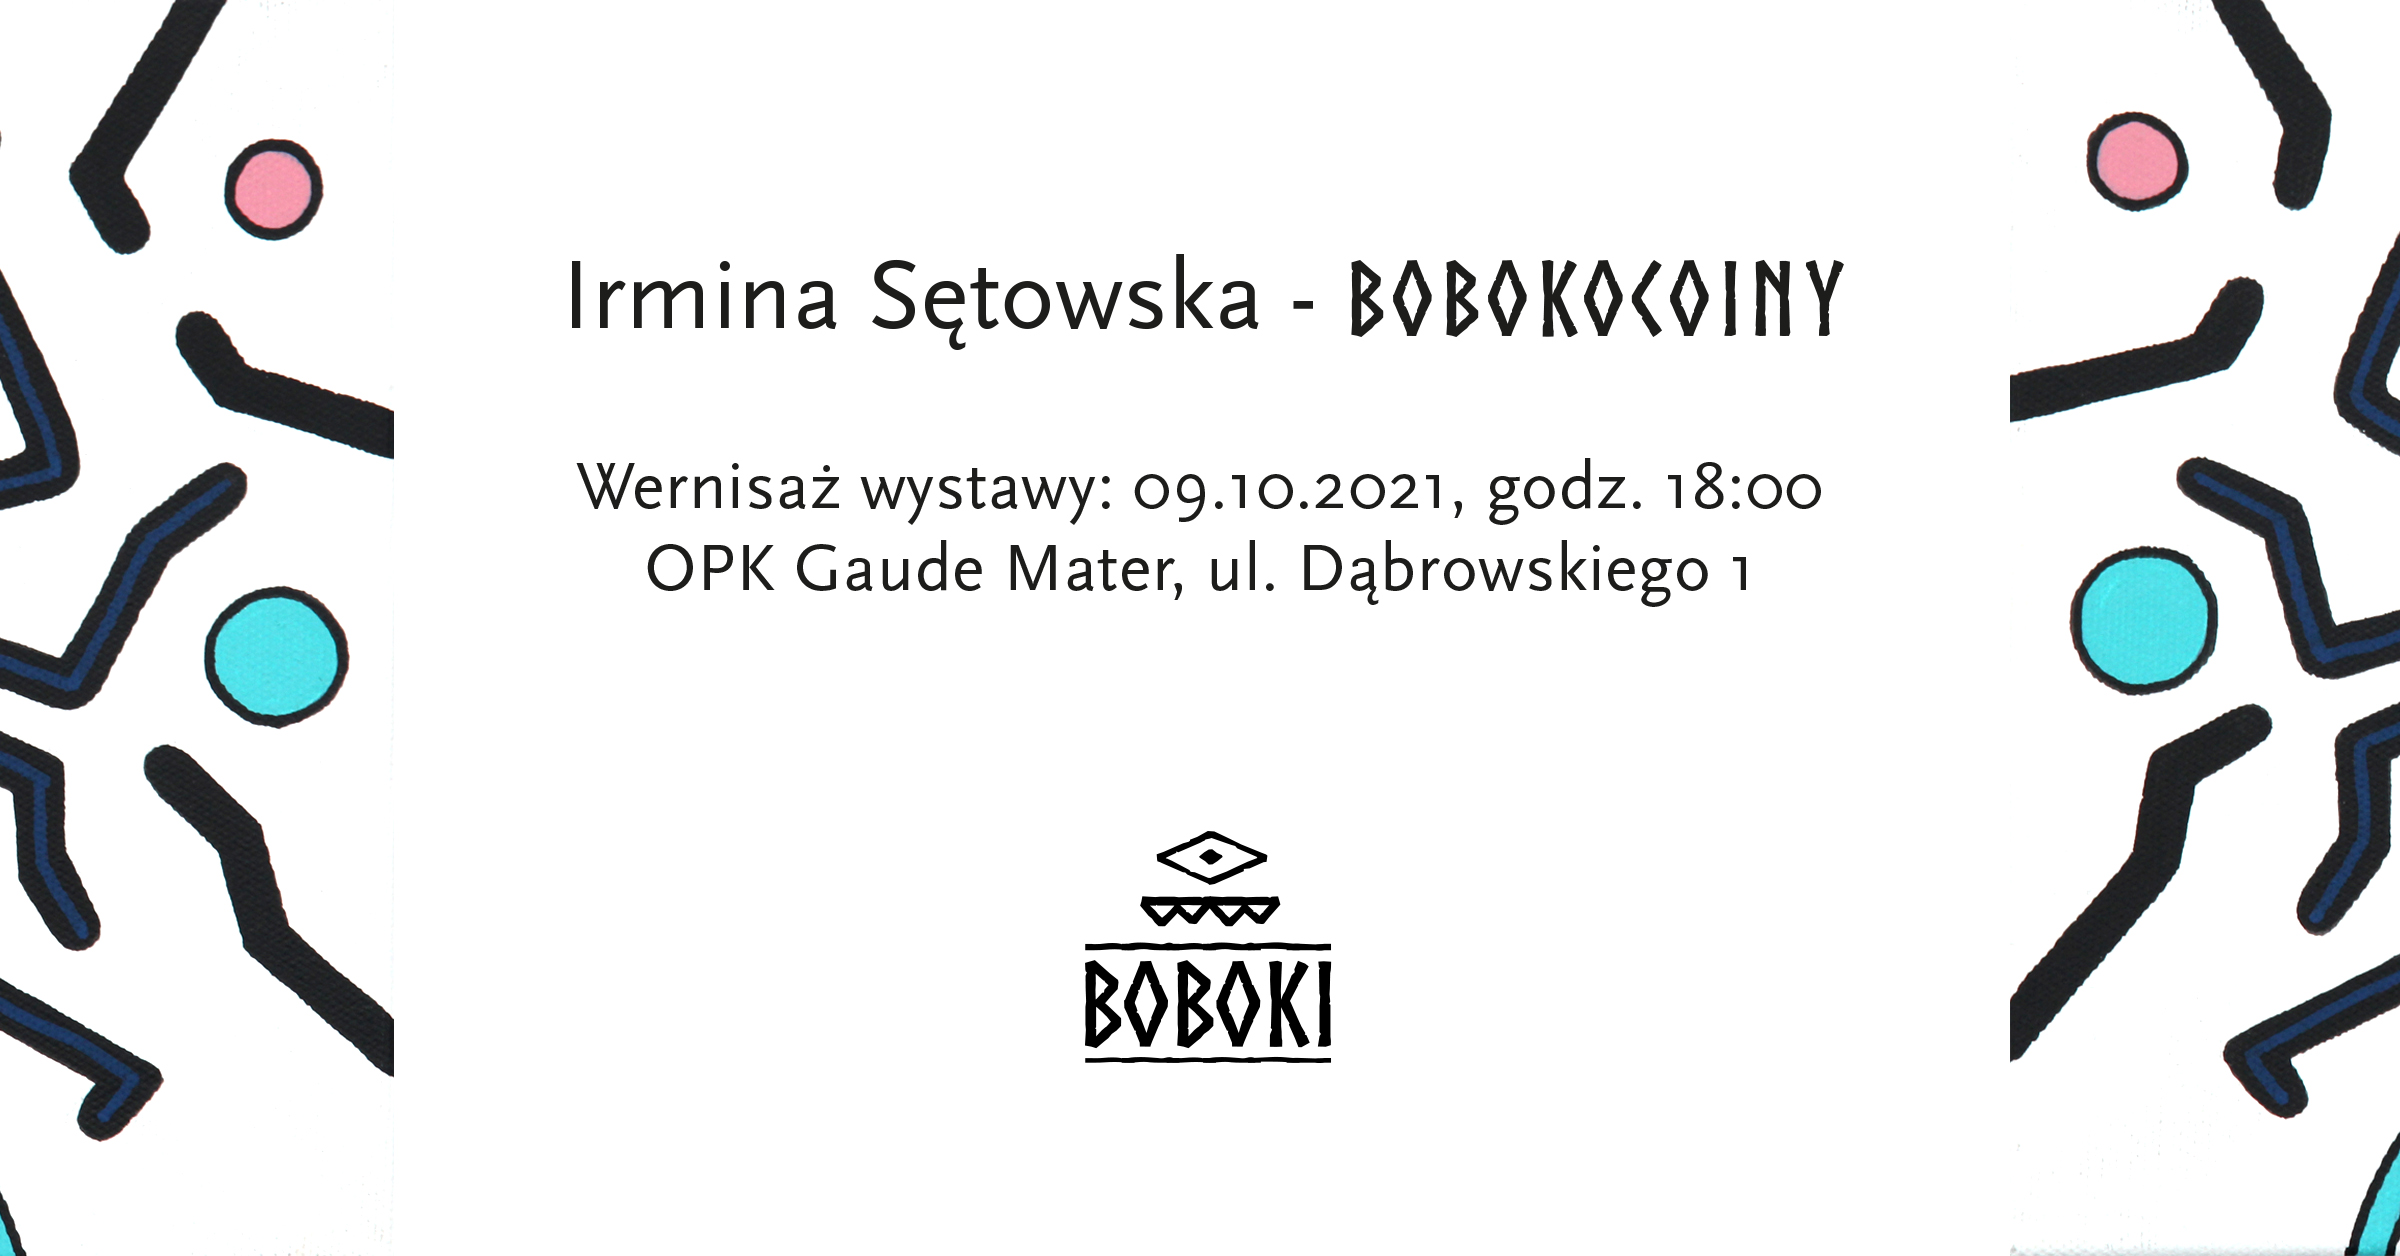 ilustracja graficzna zapowiadająca wystawę napis: Irmina Sętowska - BOBOKOINY Wernisaż wystawy: 09.10.2.2022, godz. 18:00 OPK Gaude Mater, ul. Dąbrowskiego 1 oraz znak graficzny z napisem BOBOKI